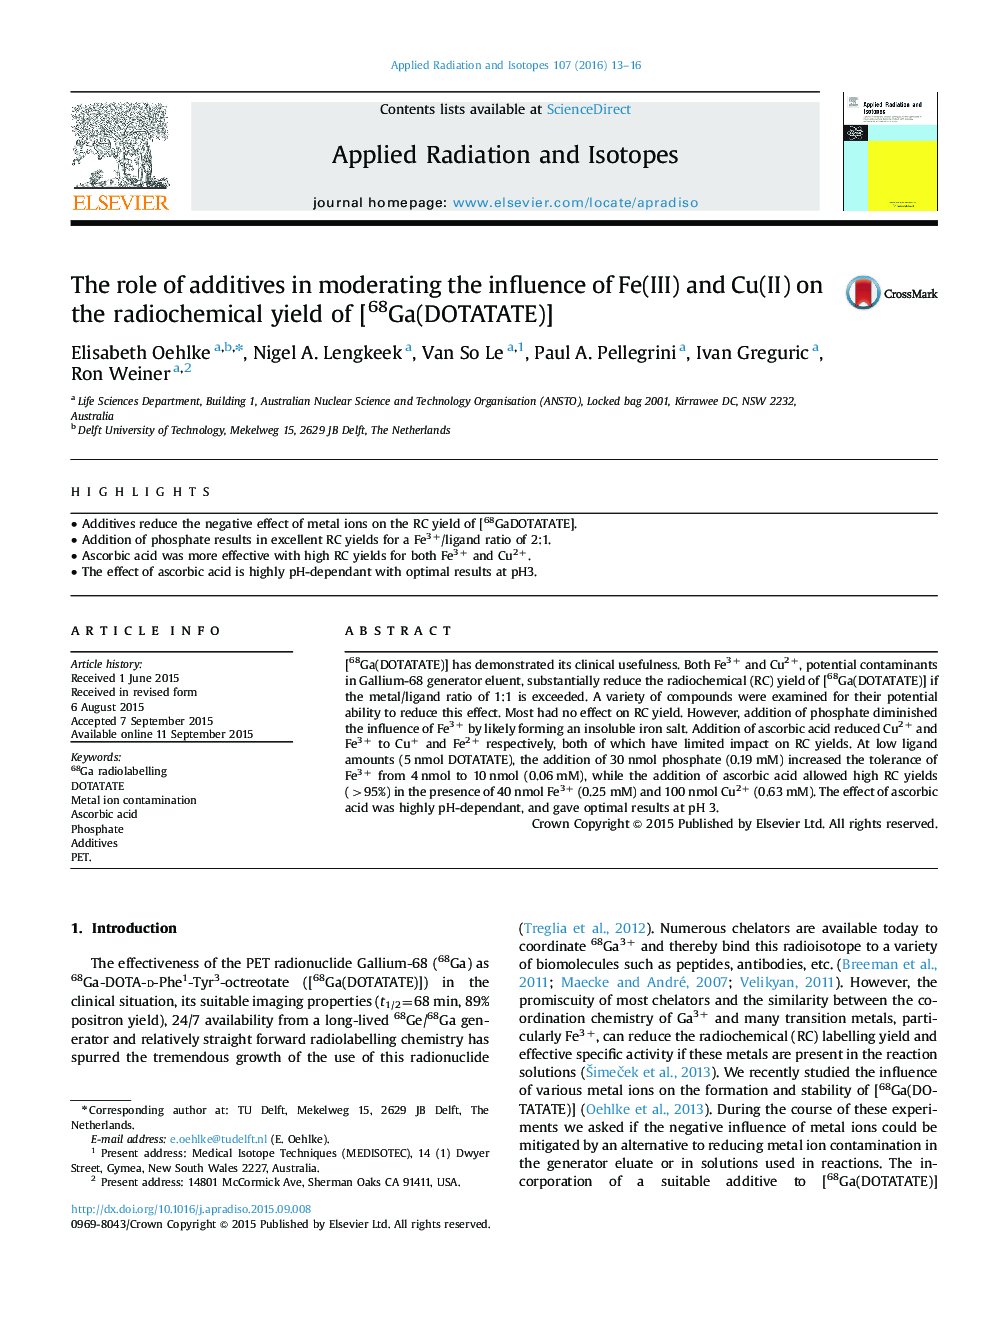 نقش افزودنی ها در تعدیل تأثیر Fe (III) و Cu (II) بر عملکرد رادیو شیمیایی [68Ga (DOTATATE)]